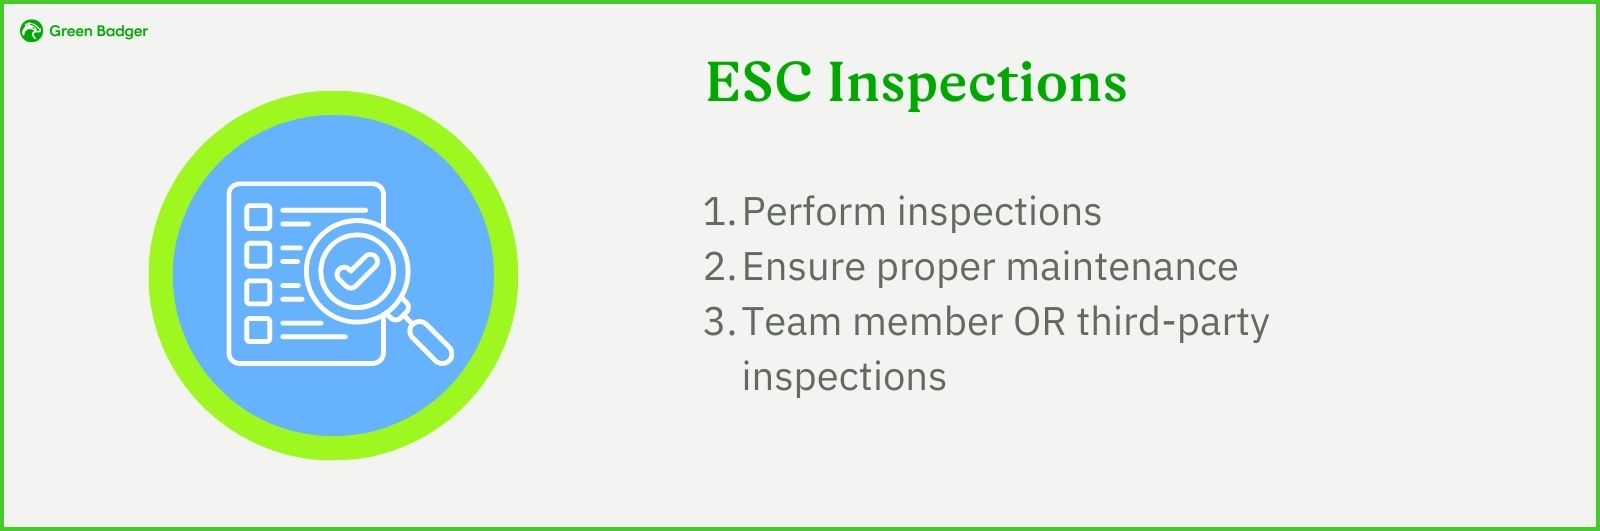 ESC Inspection